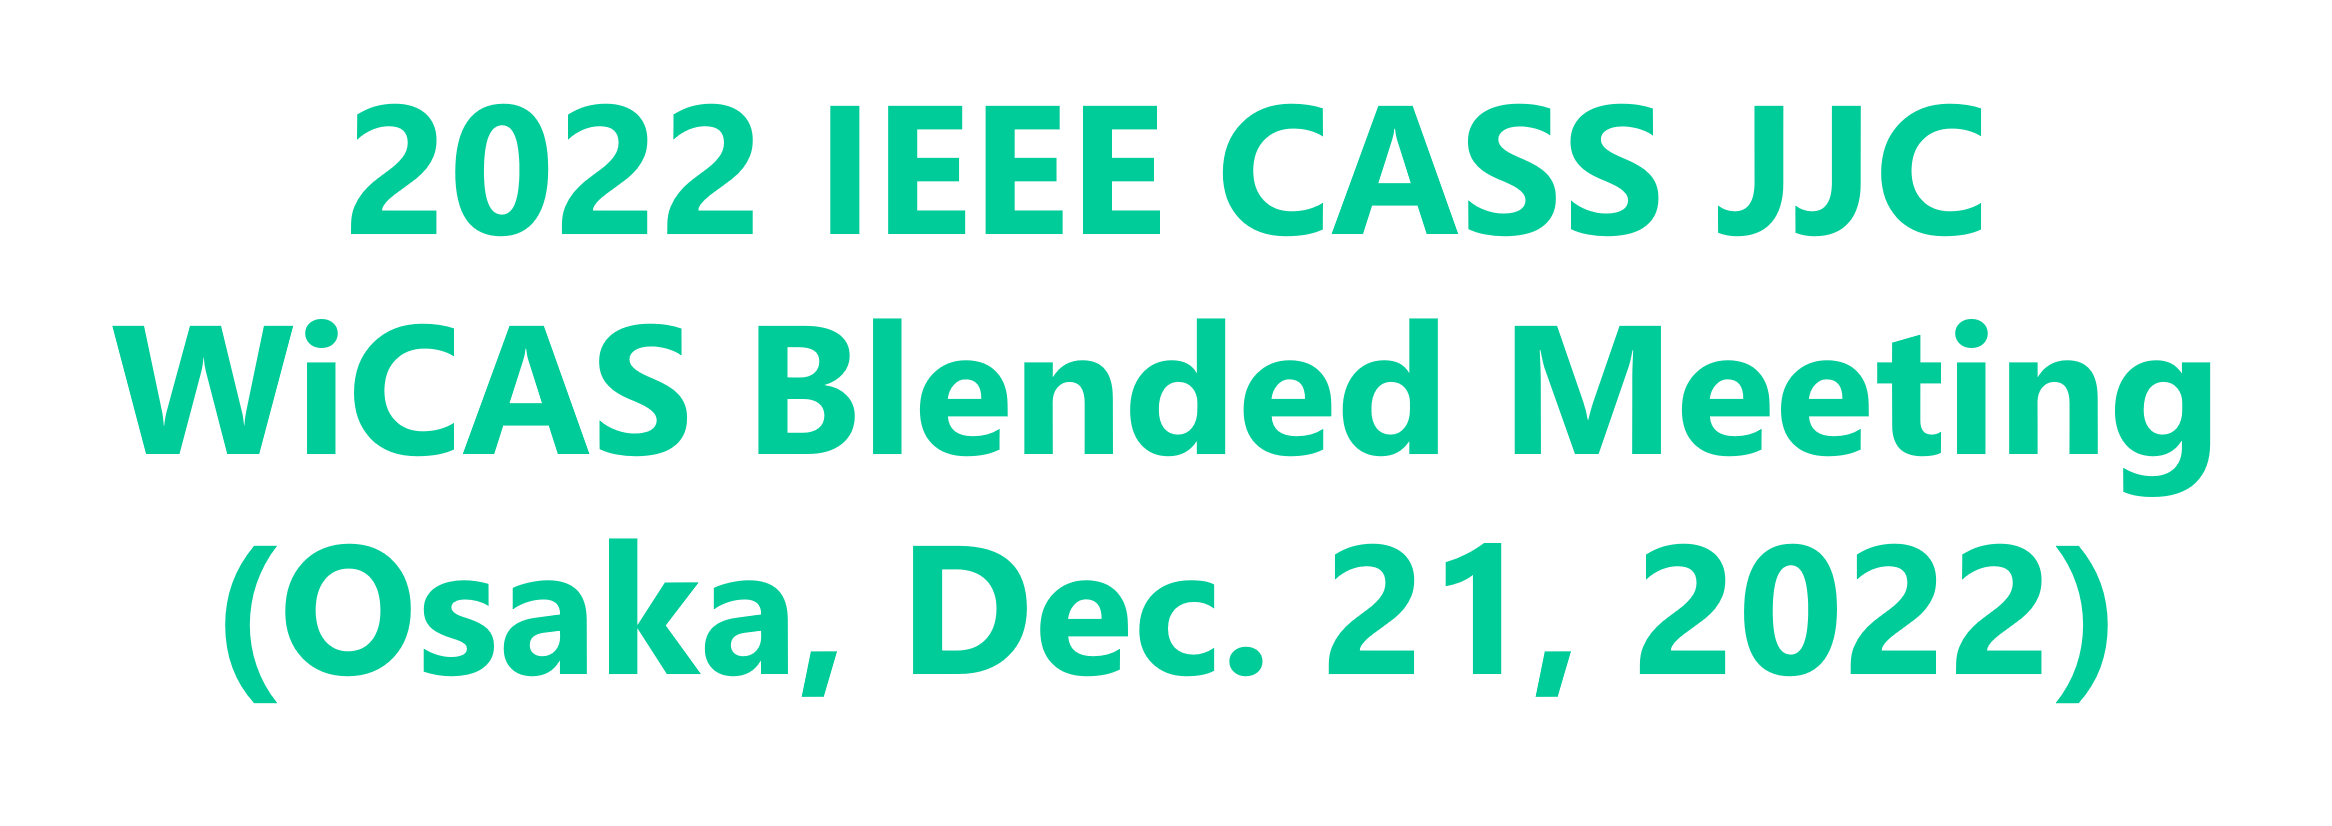 2022 IEEE CASS JJC WiCAS Blended Meeting